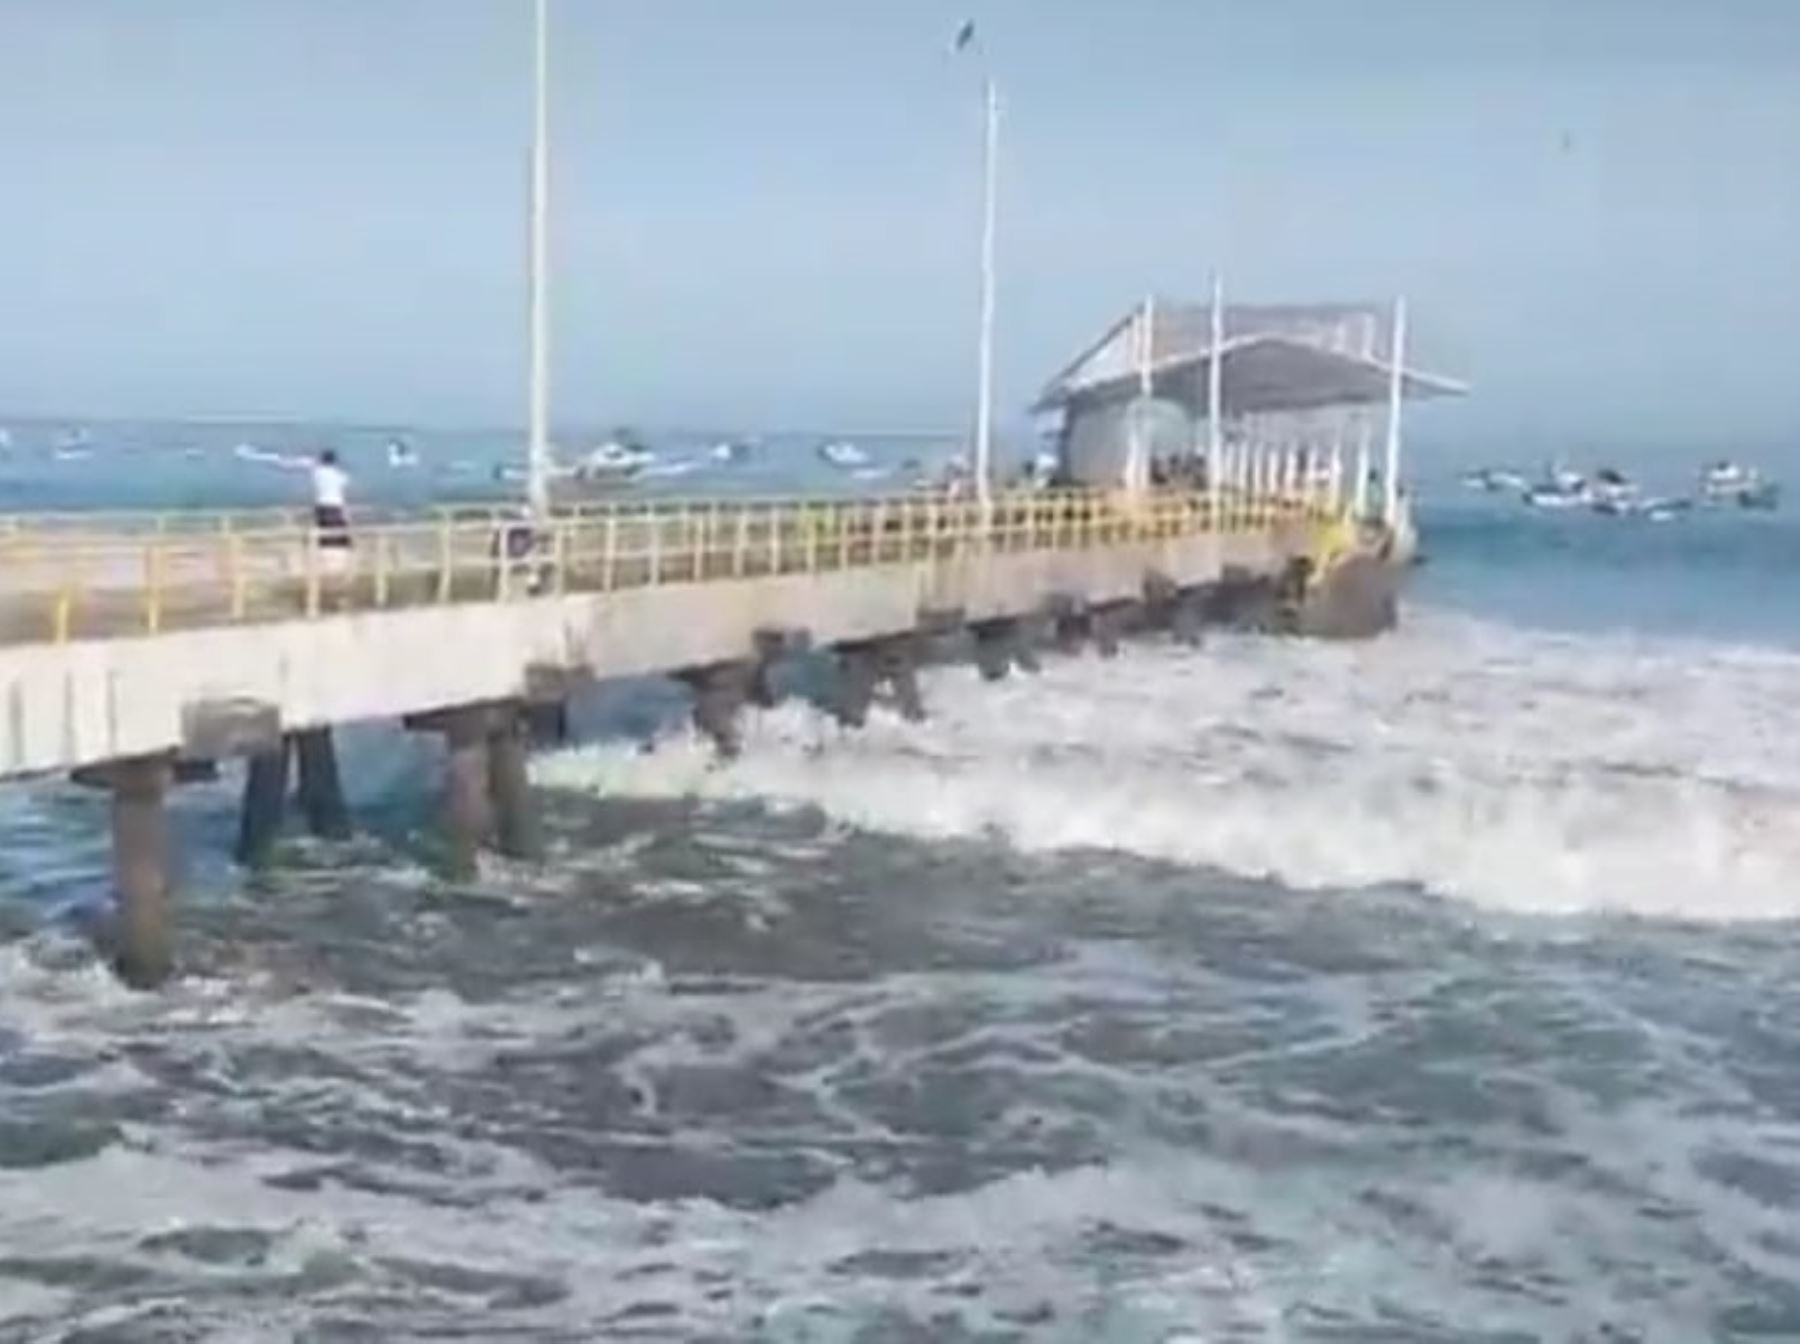 El Instituto Nacional de Defensa Civil informó que 18 puertos se mantienen cerrados en el litoral norte y centro ante la ocurrencia de oleajes de ligera a fuerte intensidad, de acuerdo con el reporte de condición de puertos emitido por la Dirección de Hidrografía y Navegación (DHN) de la Marina de Guerra del Perú.